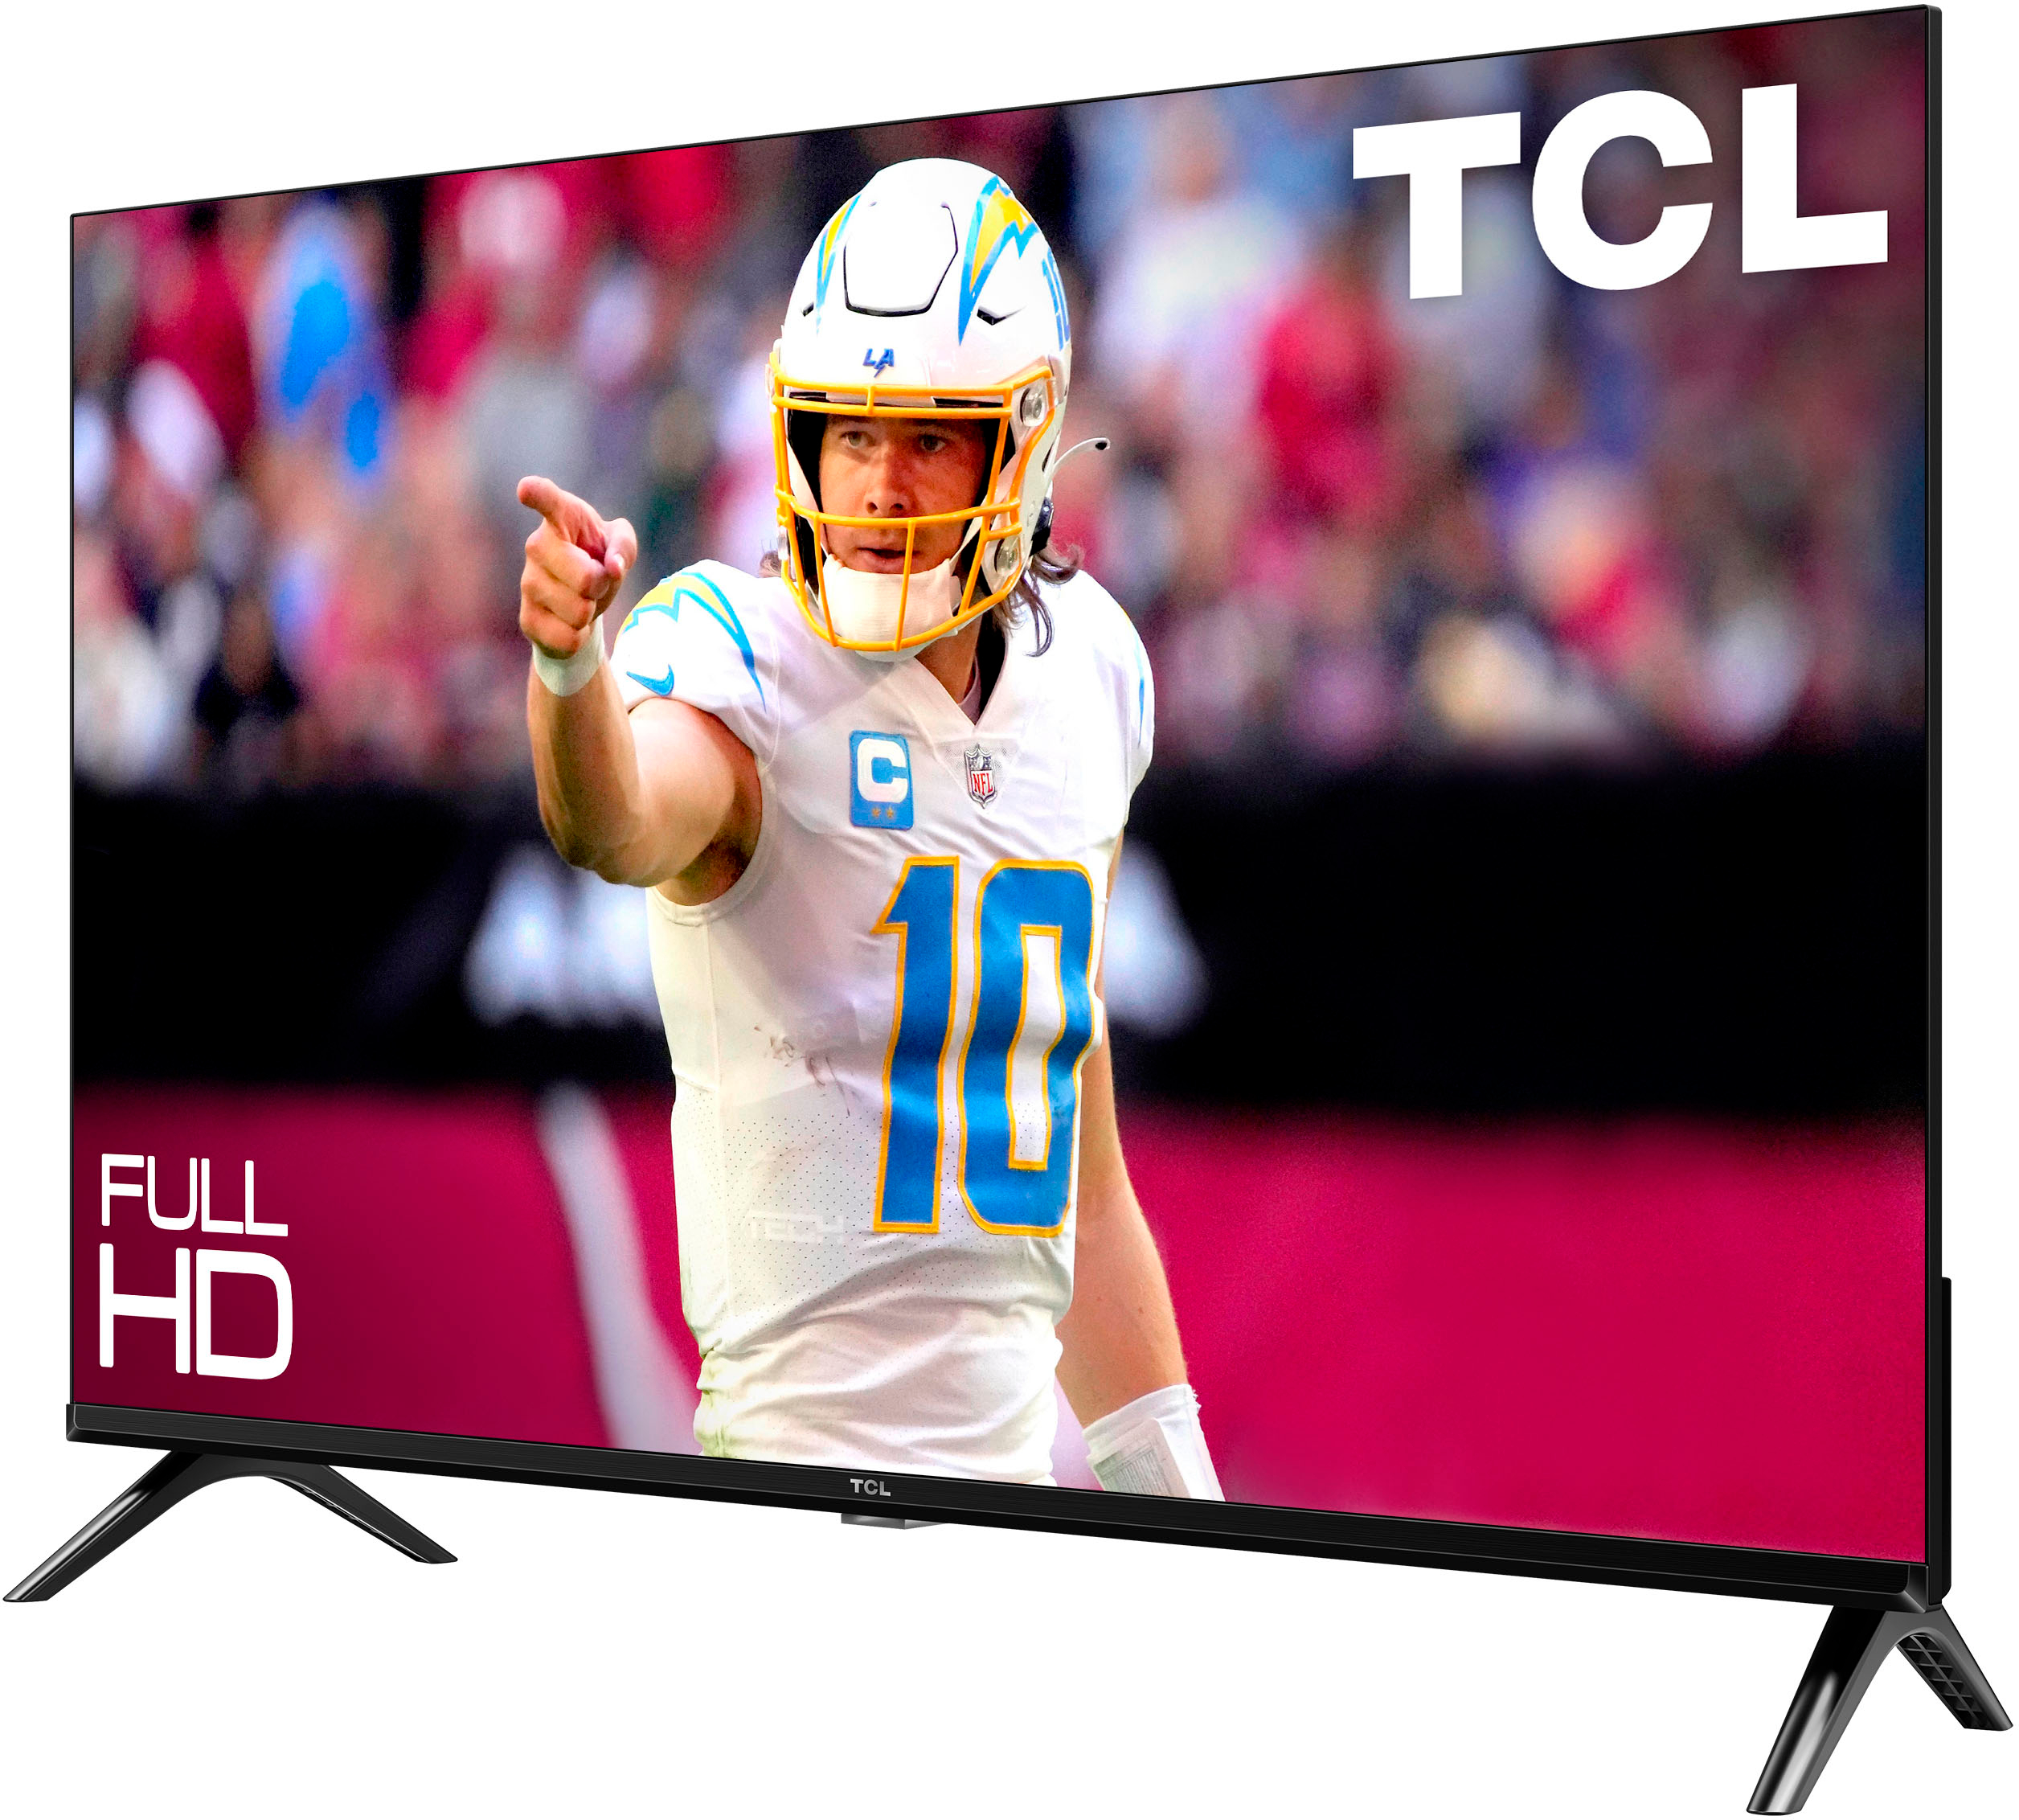 TCL Televisión Inteligente Android TV Clase 3 Series 40 Pulgadas